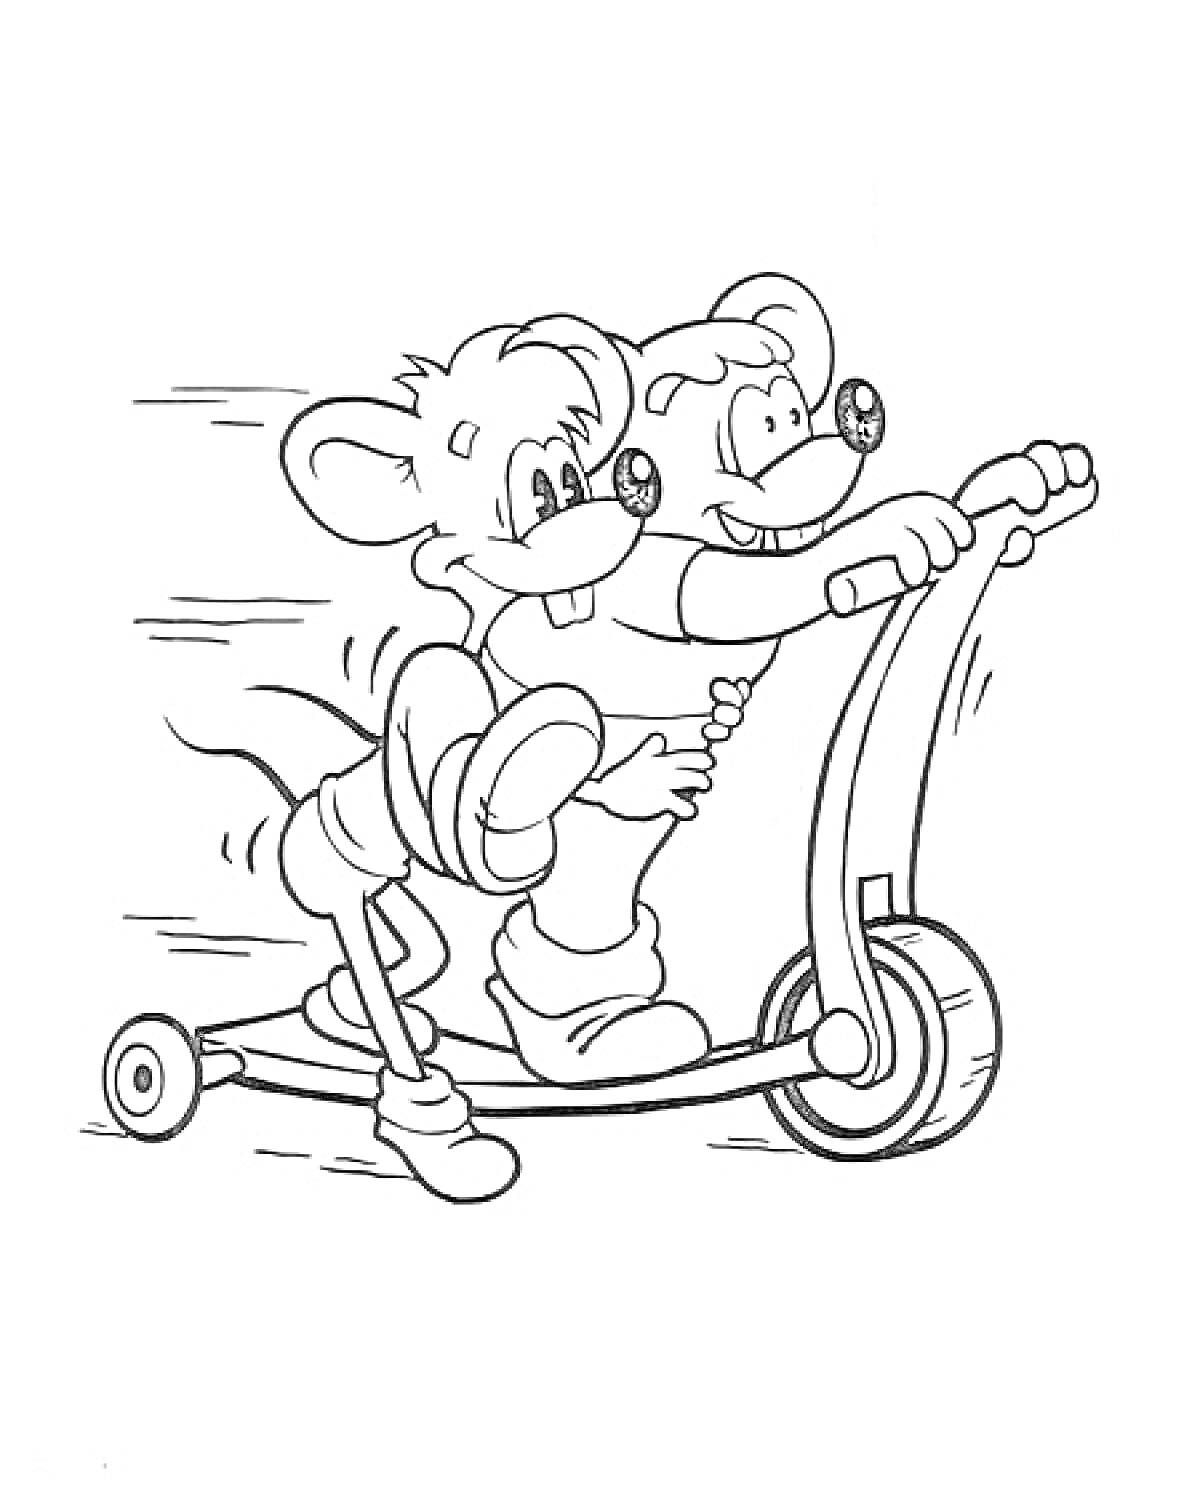 Две мыши на самокате из мультфильма 